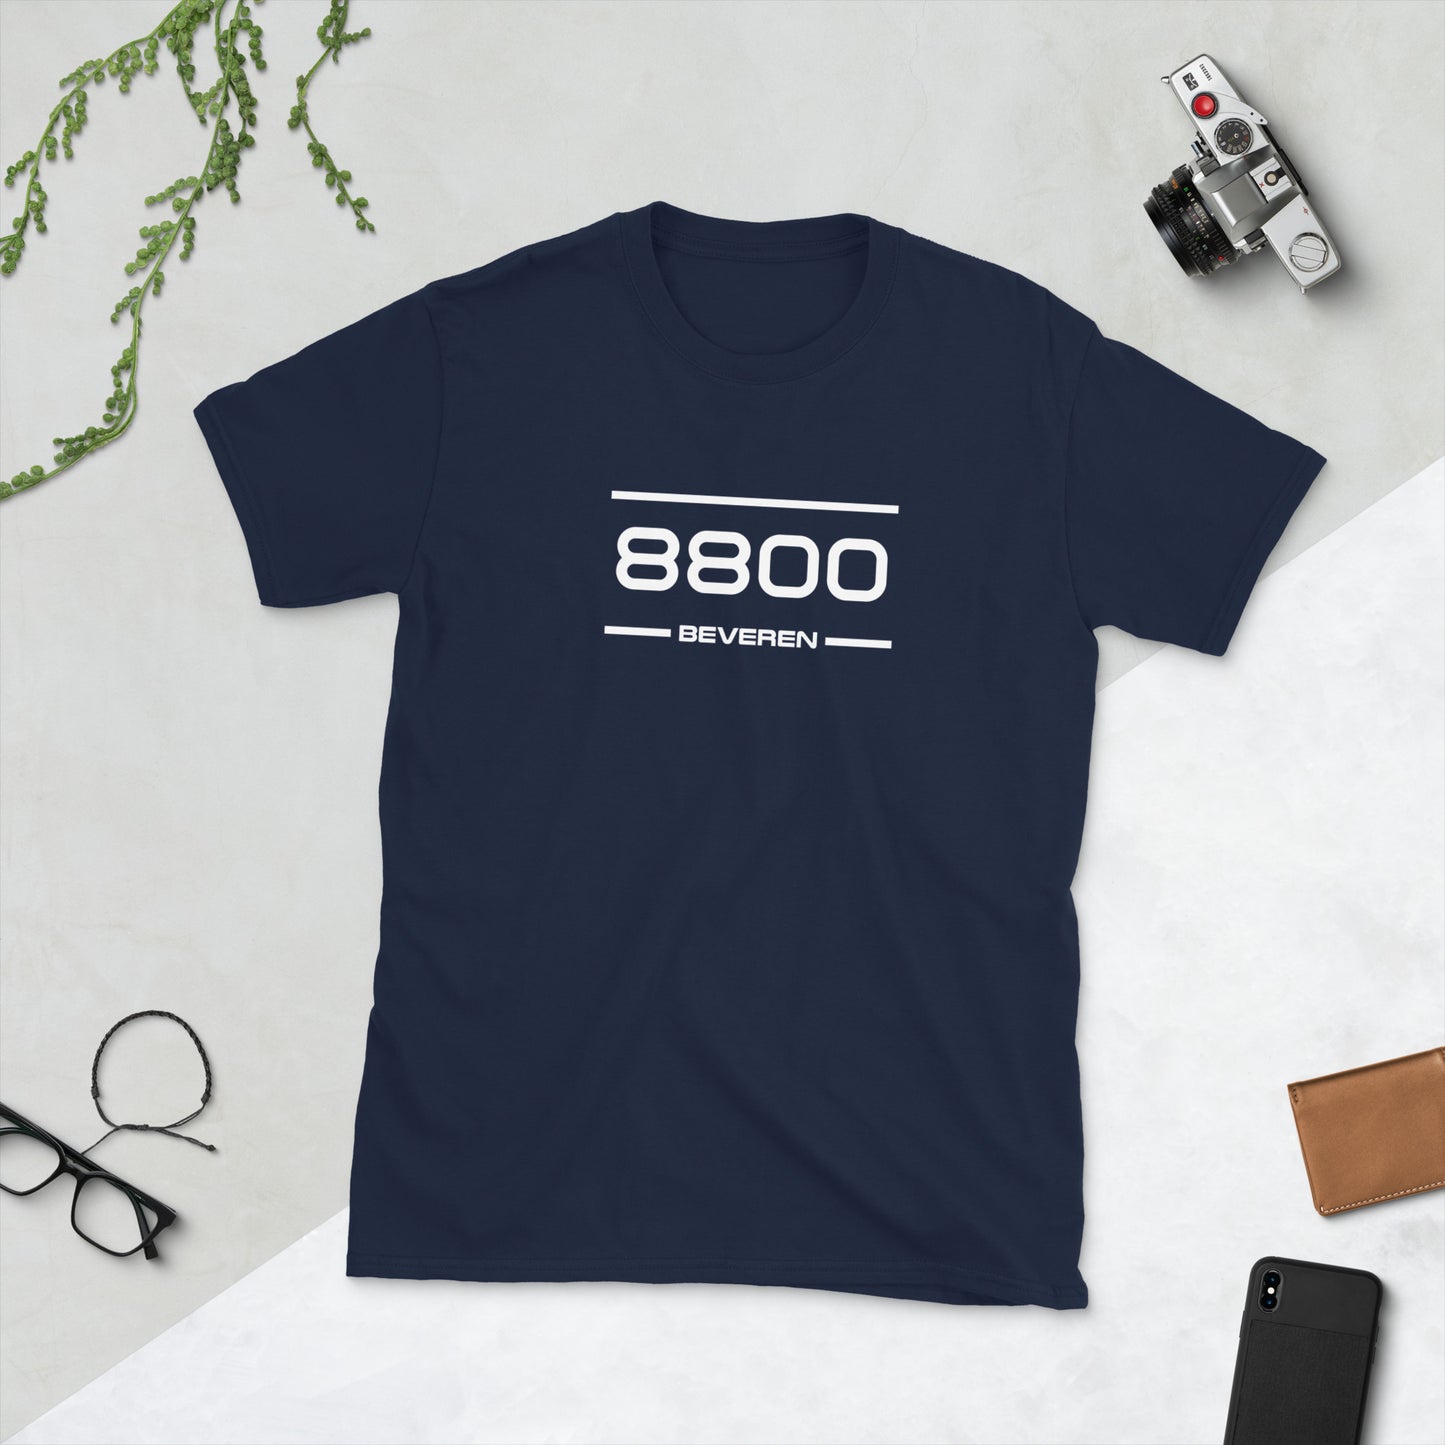 Tshirt - 8800 - Beveren